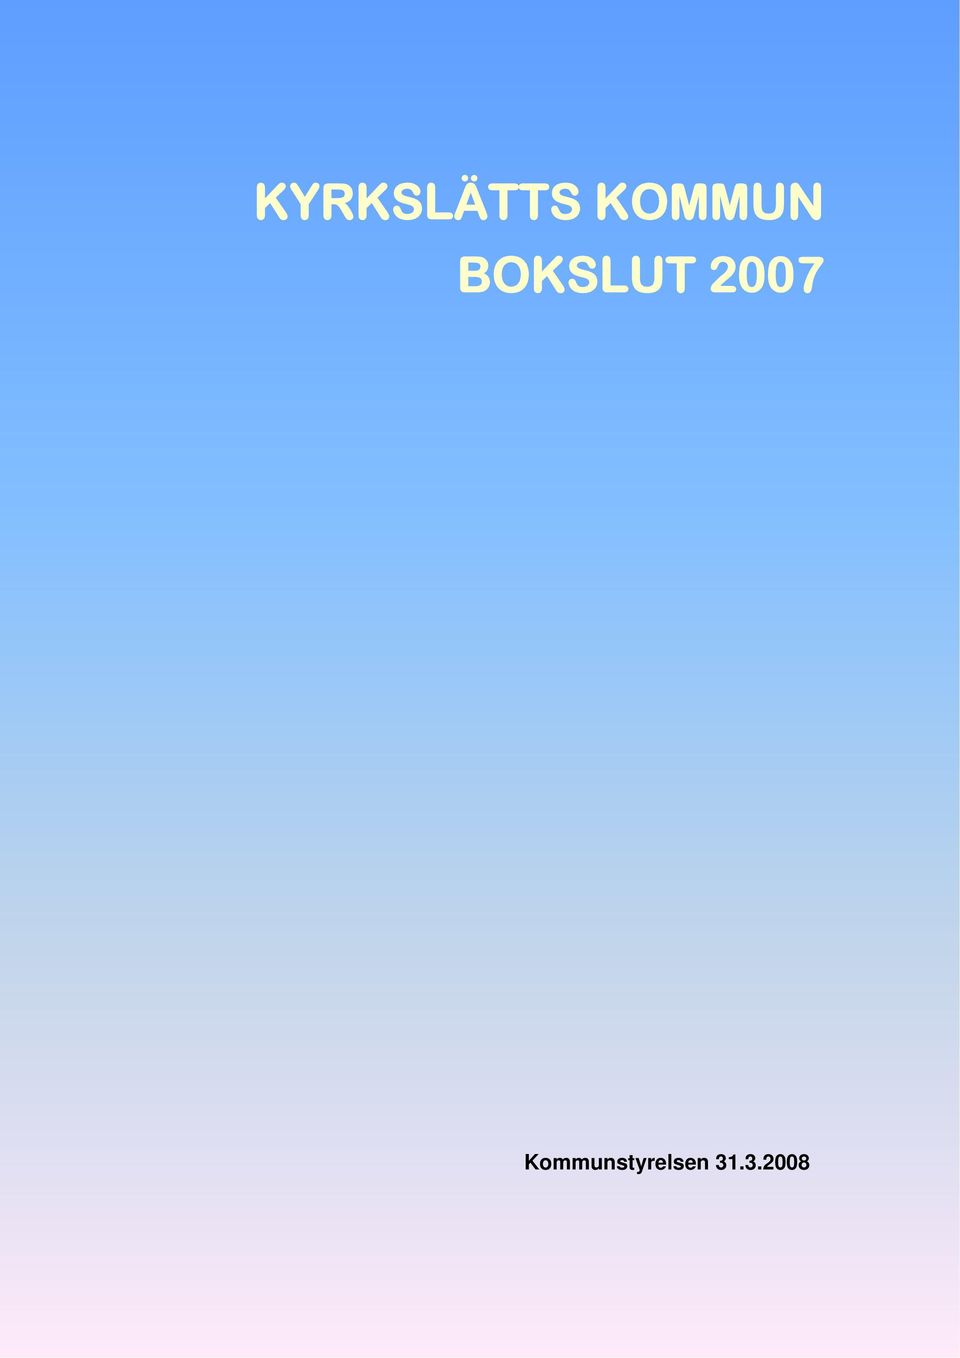 BOKSLUT 2007